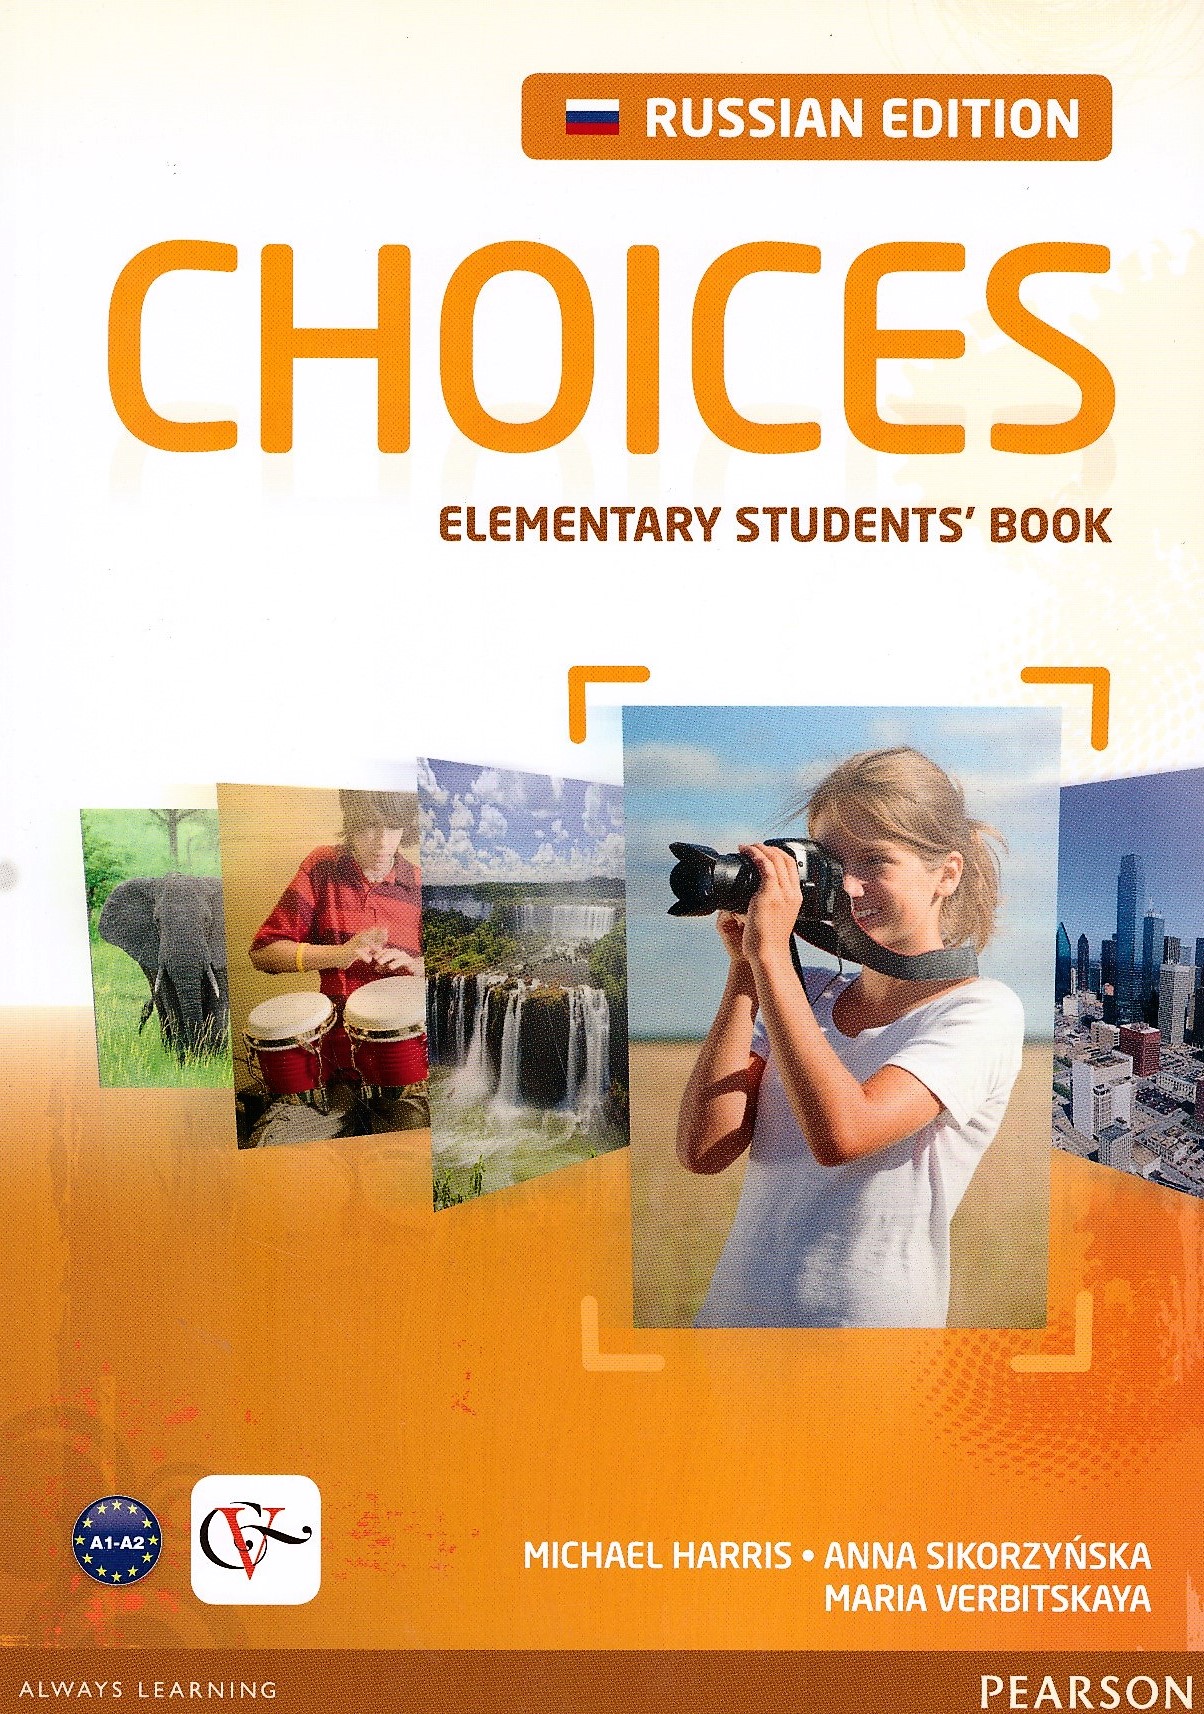 Elementary students book учебник. Choices учебник. Книга choice. Choices Elementary. Учебник choices Elementary.